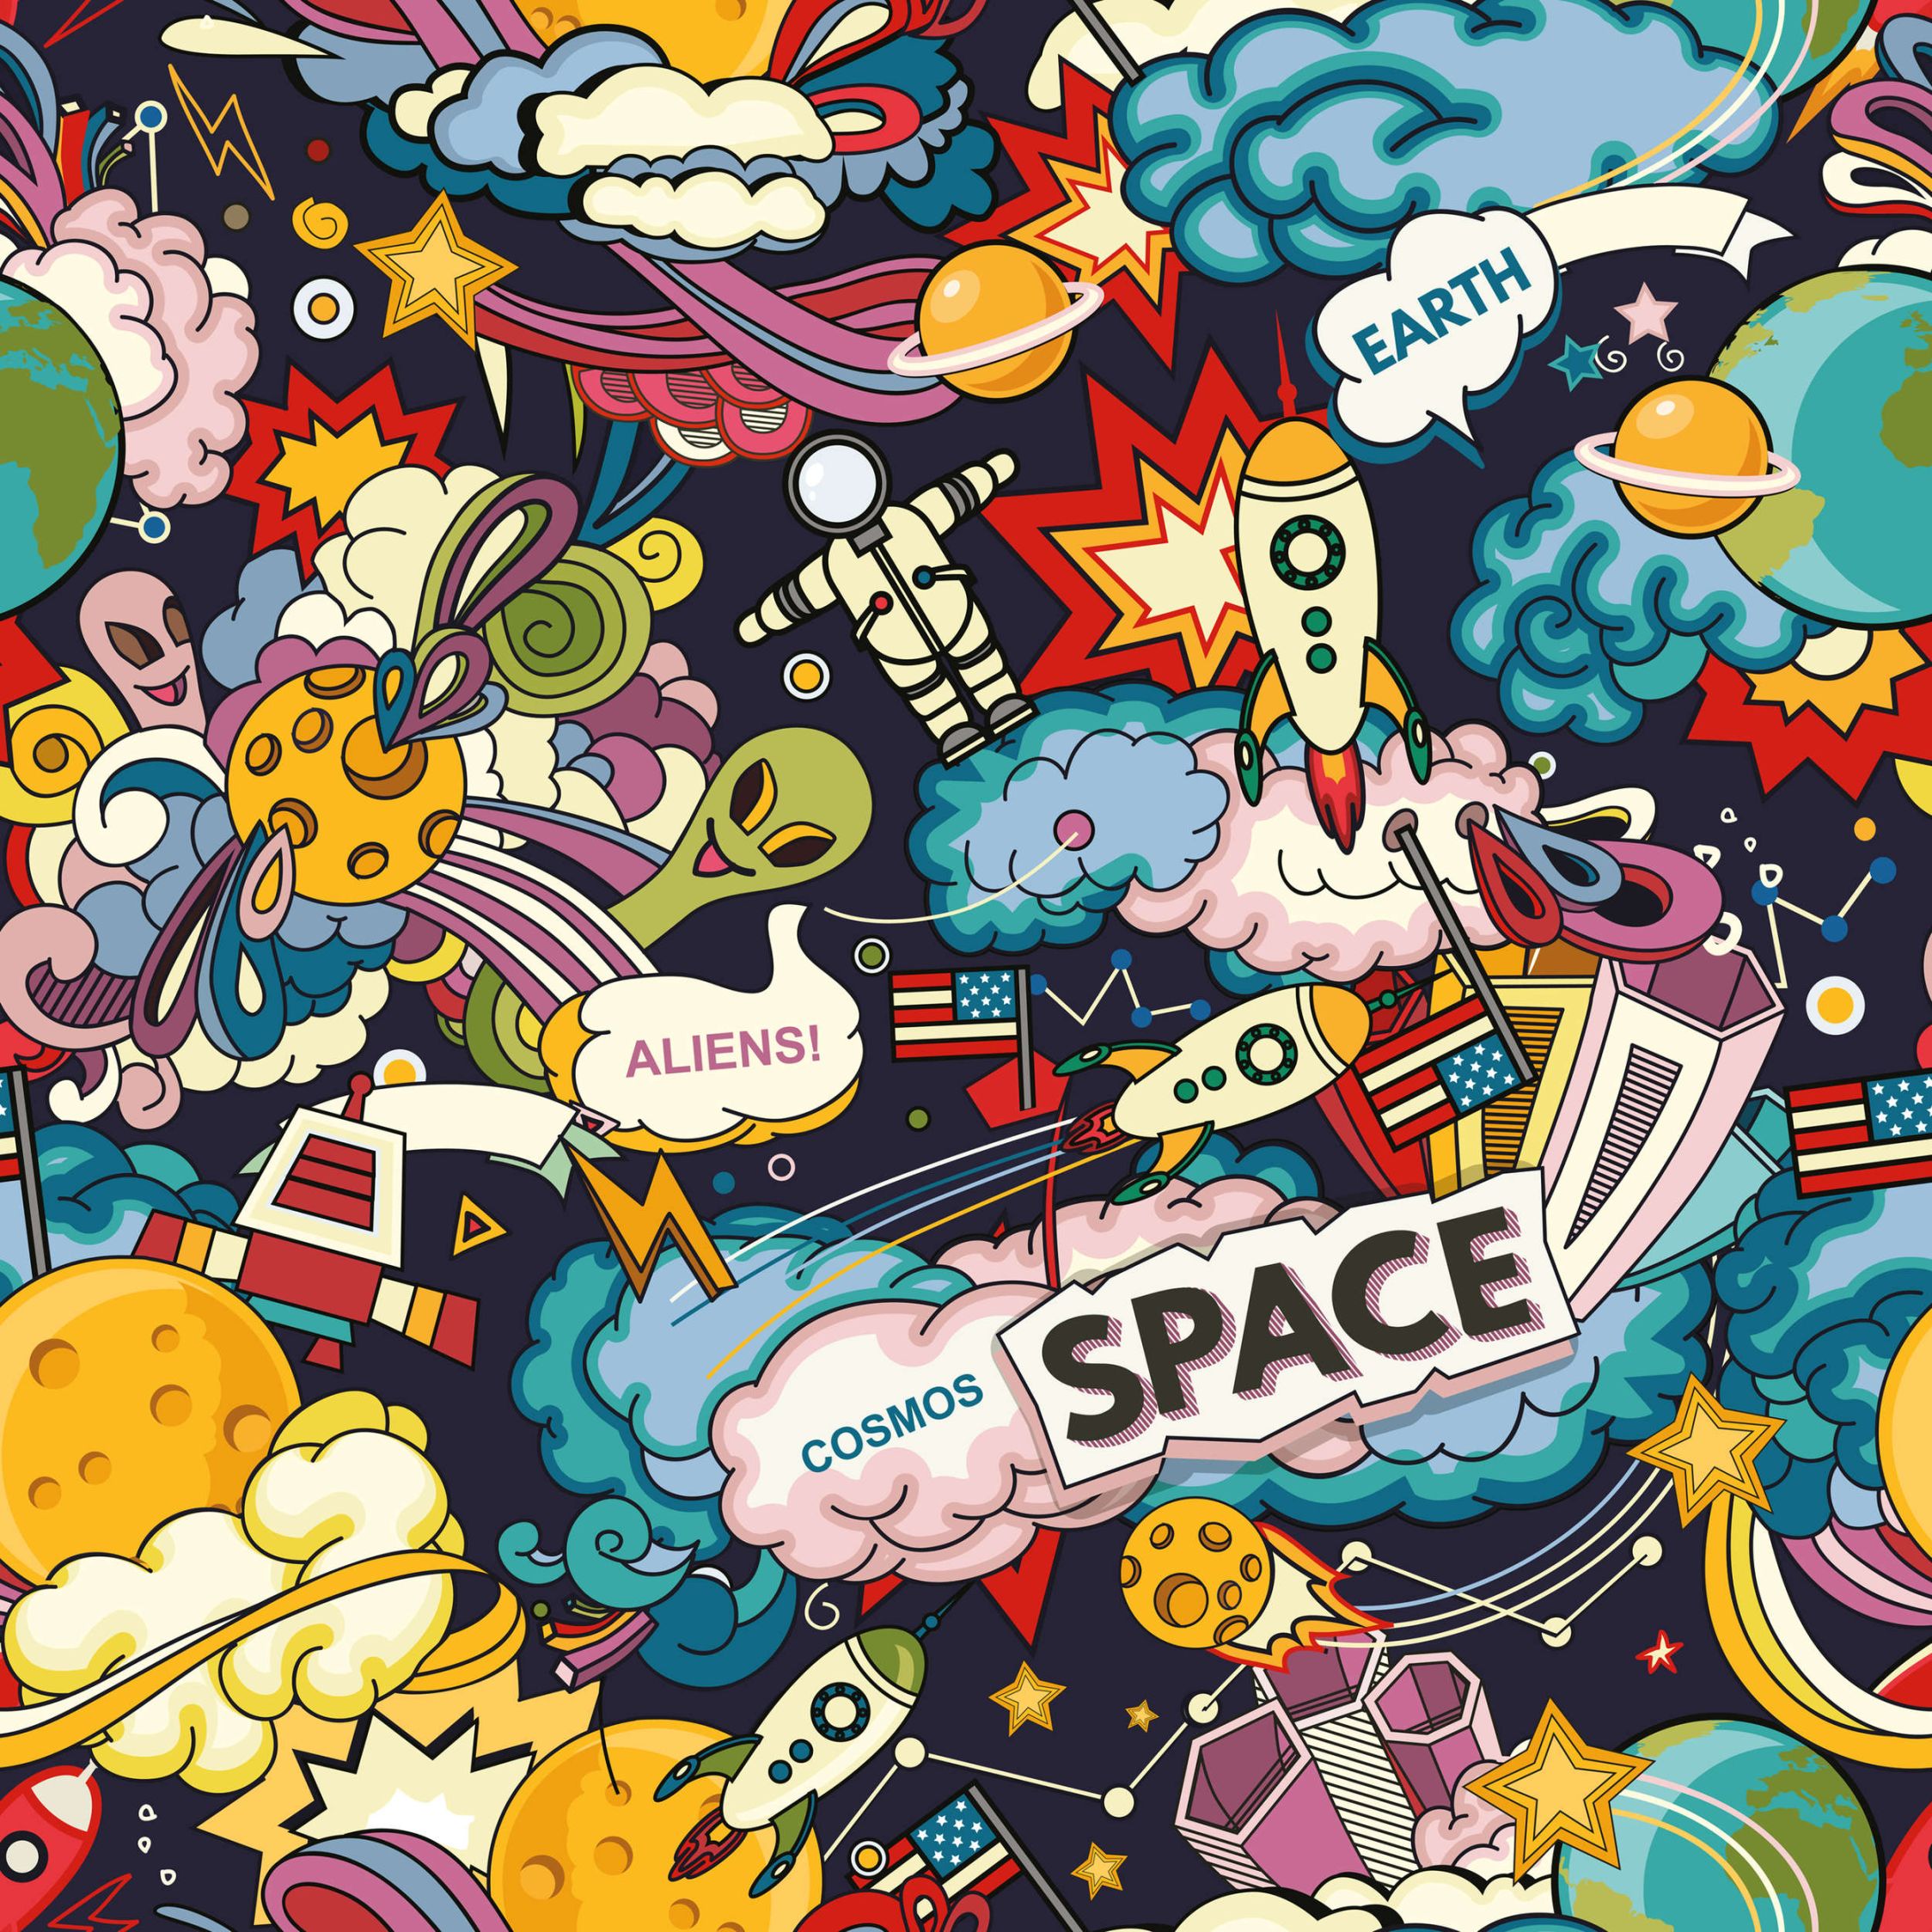             Digital behang Universe collage in komische stijl - structuurvlies
        